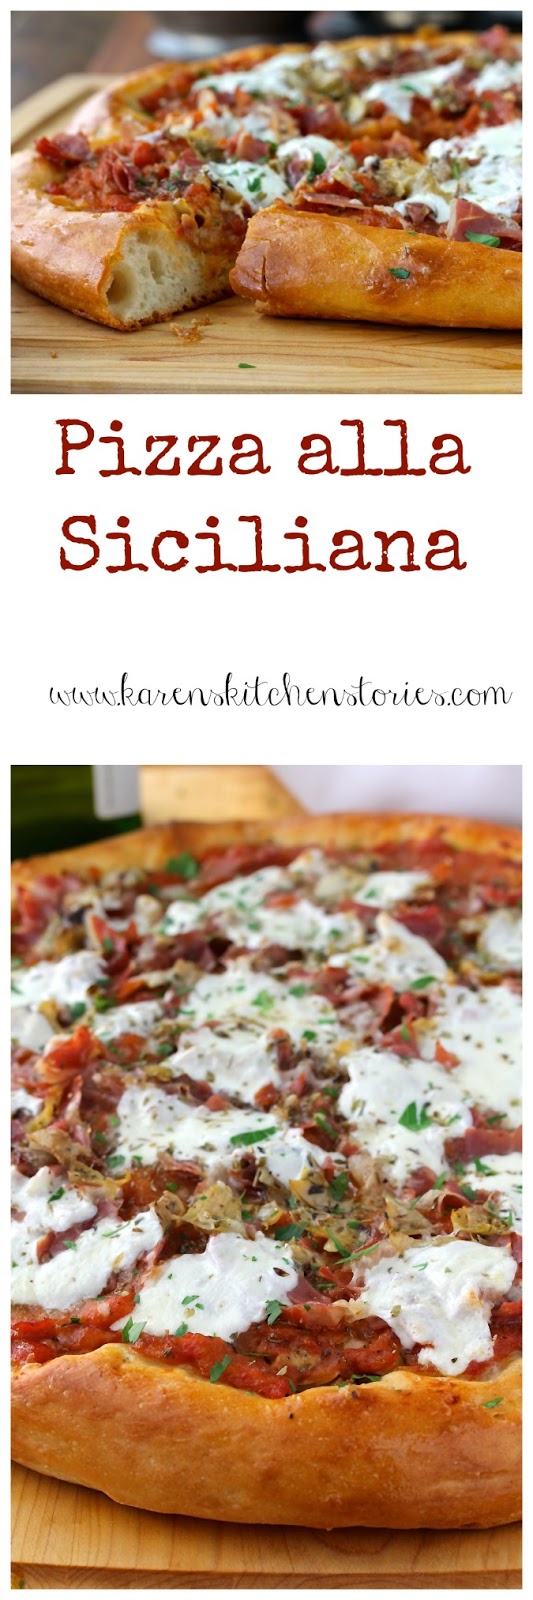 Pizza Siciliana/Sicilian